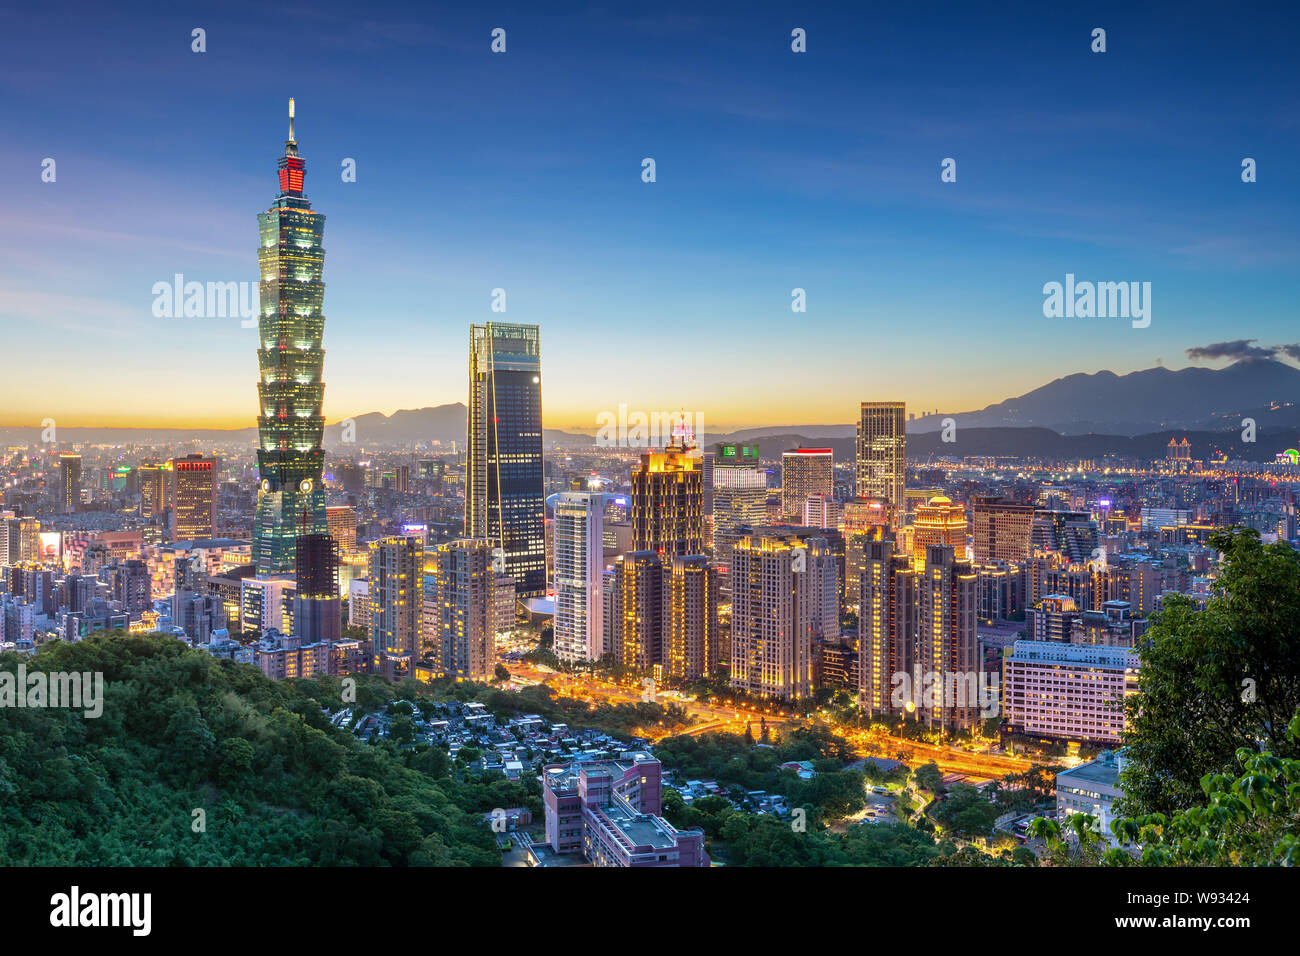 City of Taipei at night, Taiwan Stock Photo